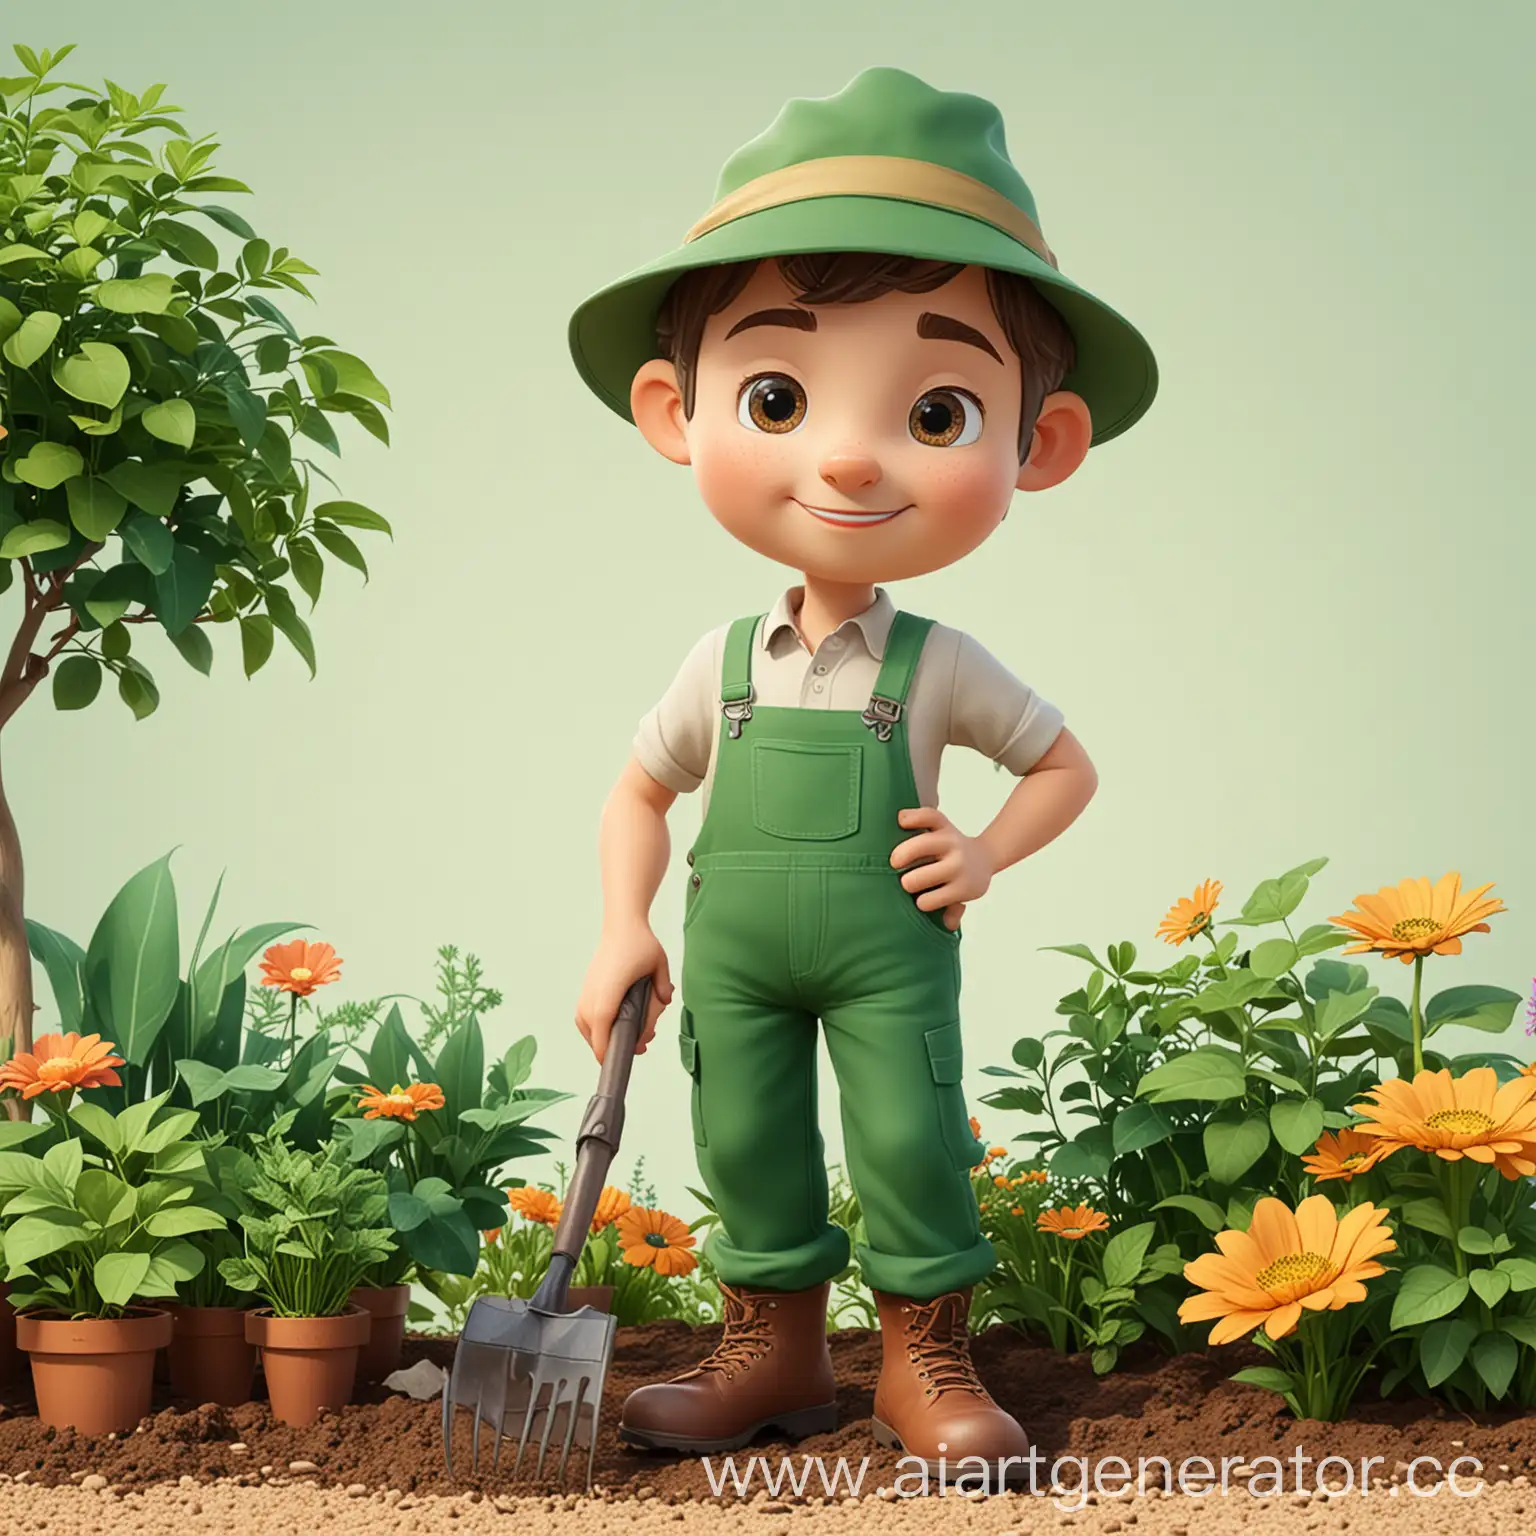 Friendly-Cartoon-Gardener-Illustration-for-Presentations